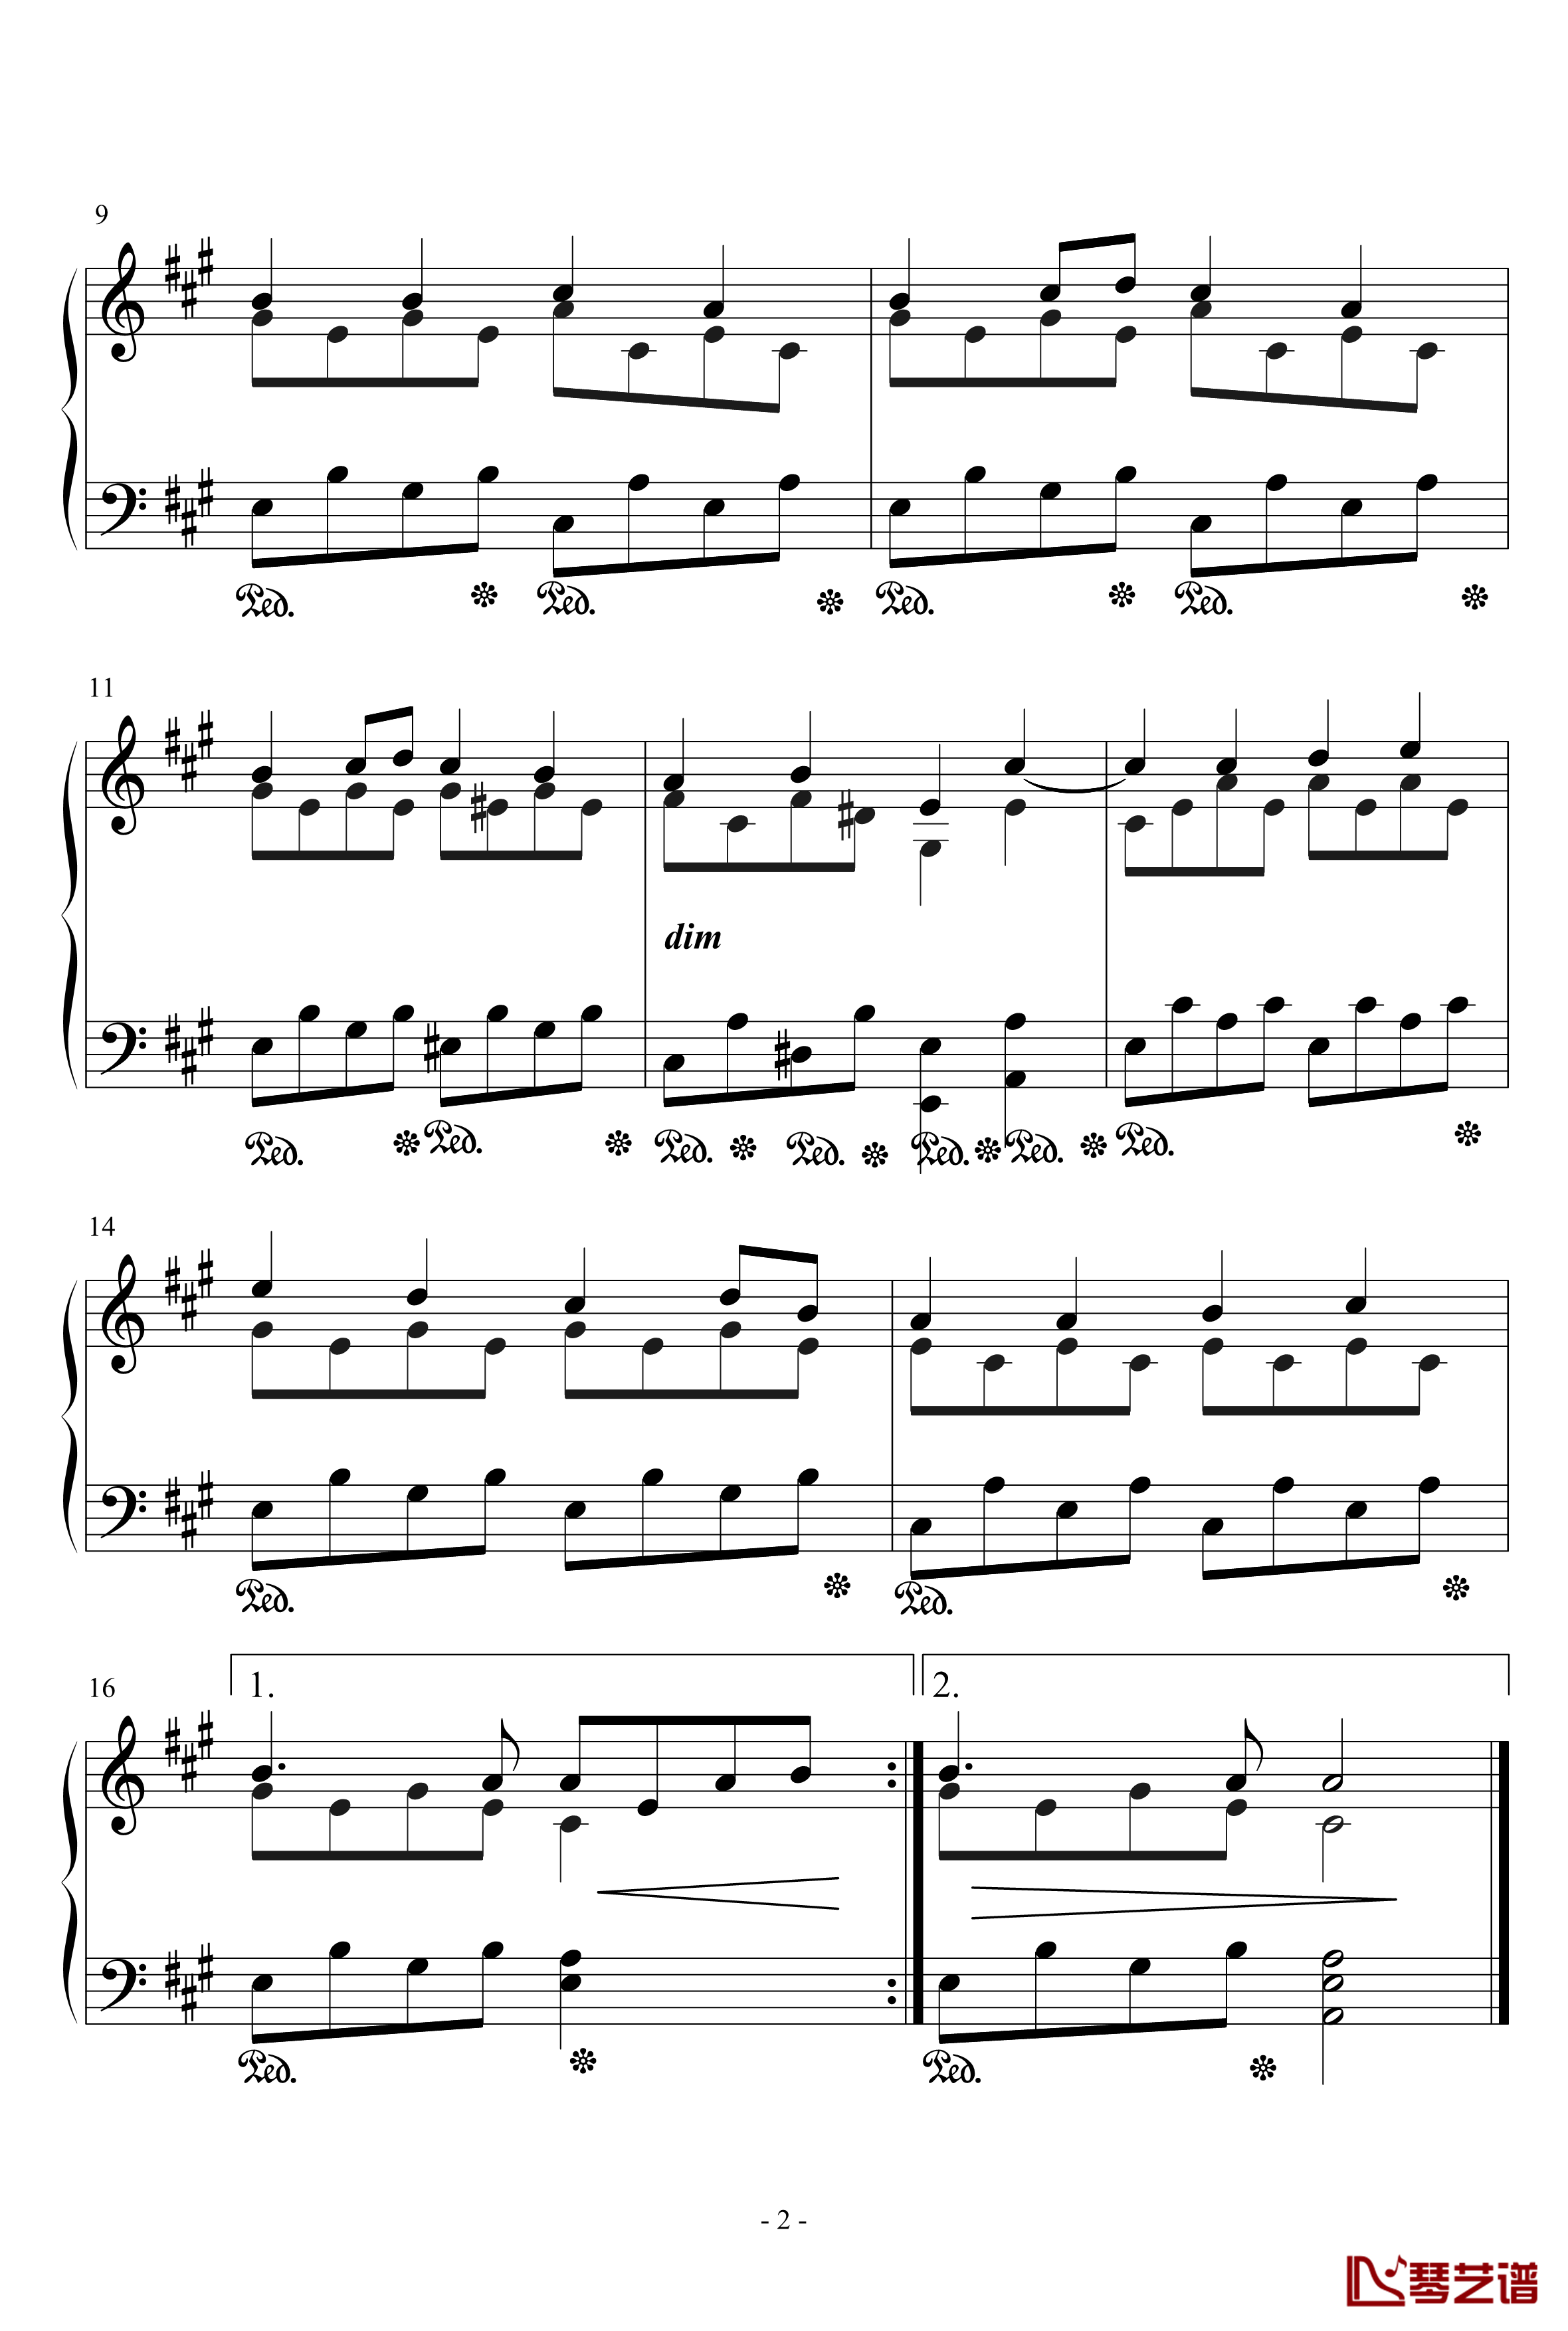 欢乐颂钢琴谱-歌颂神圣版-贝多芬-beethoven